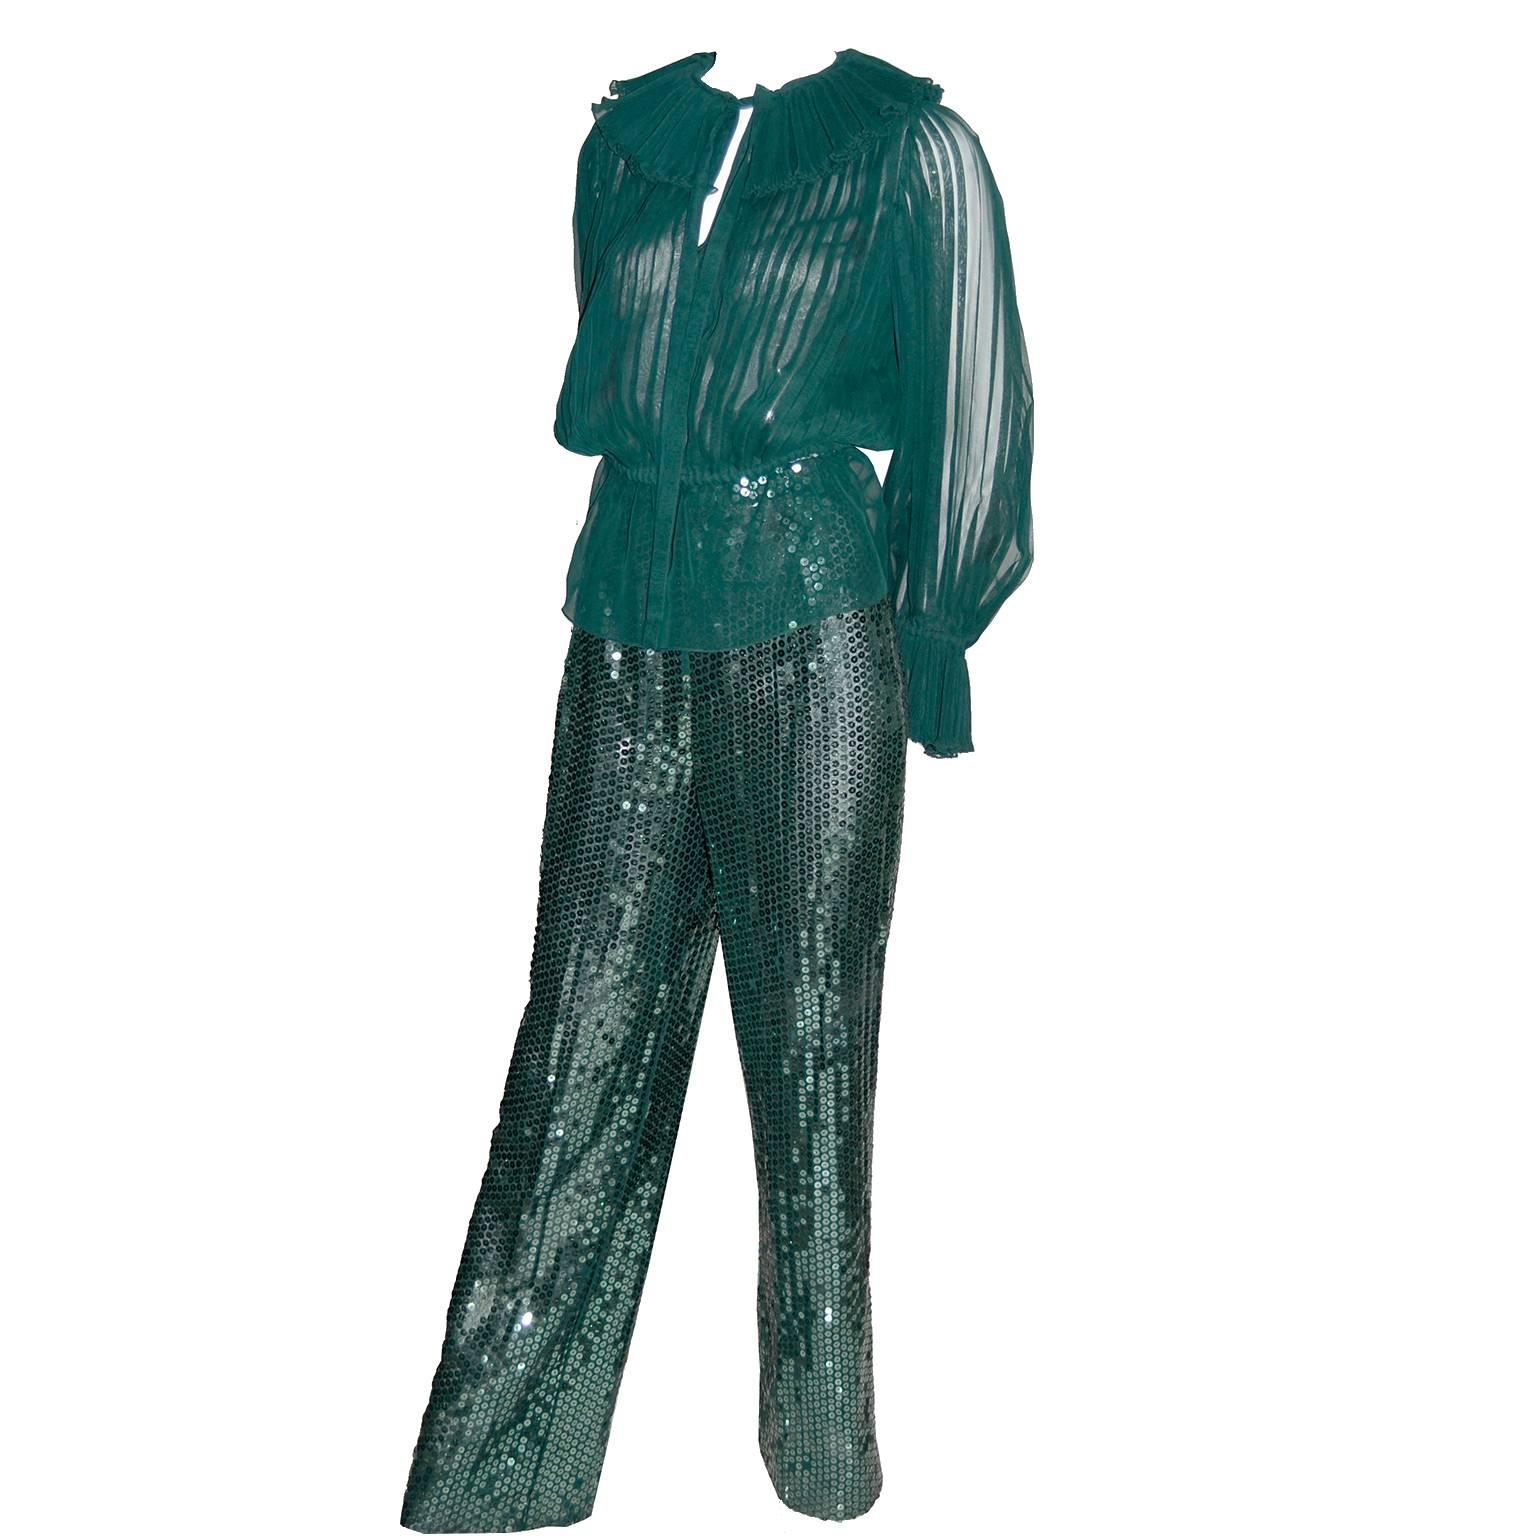 Oscar de la Renta Green Sequin Pants & Keyhole Poet Blouse Evening Outfit 